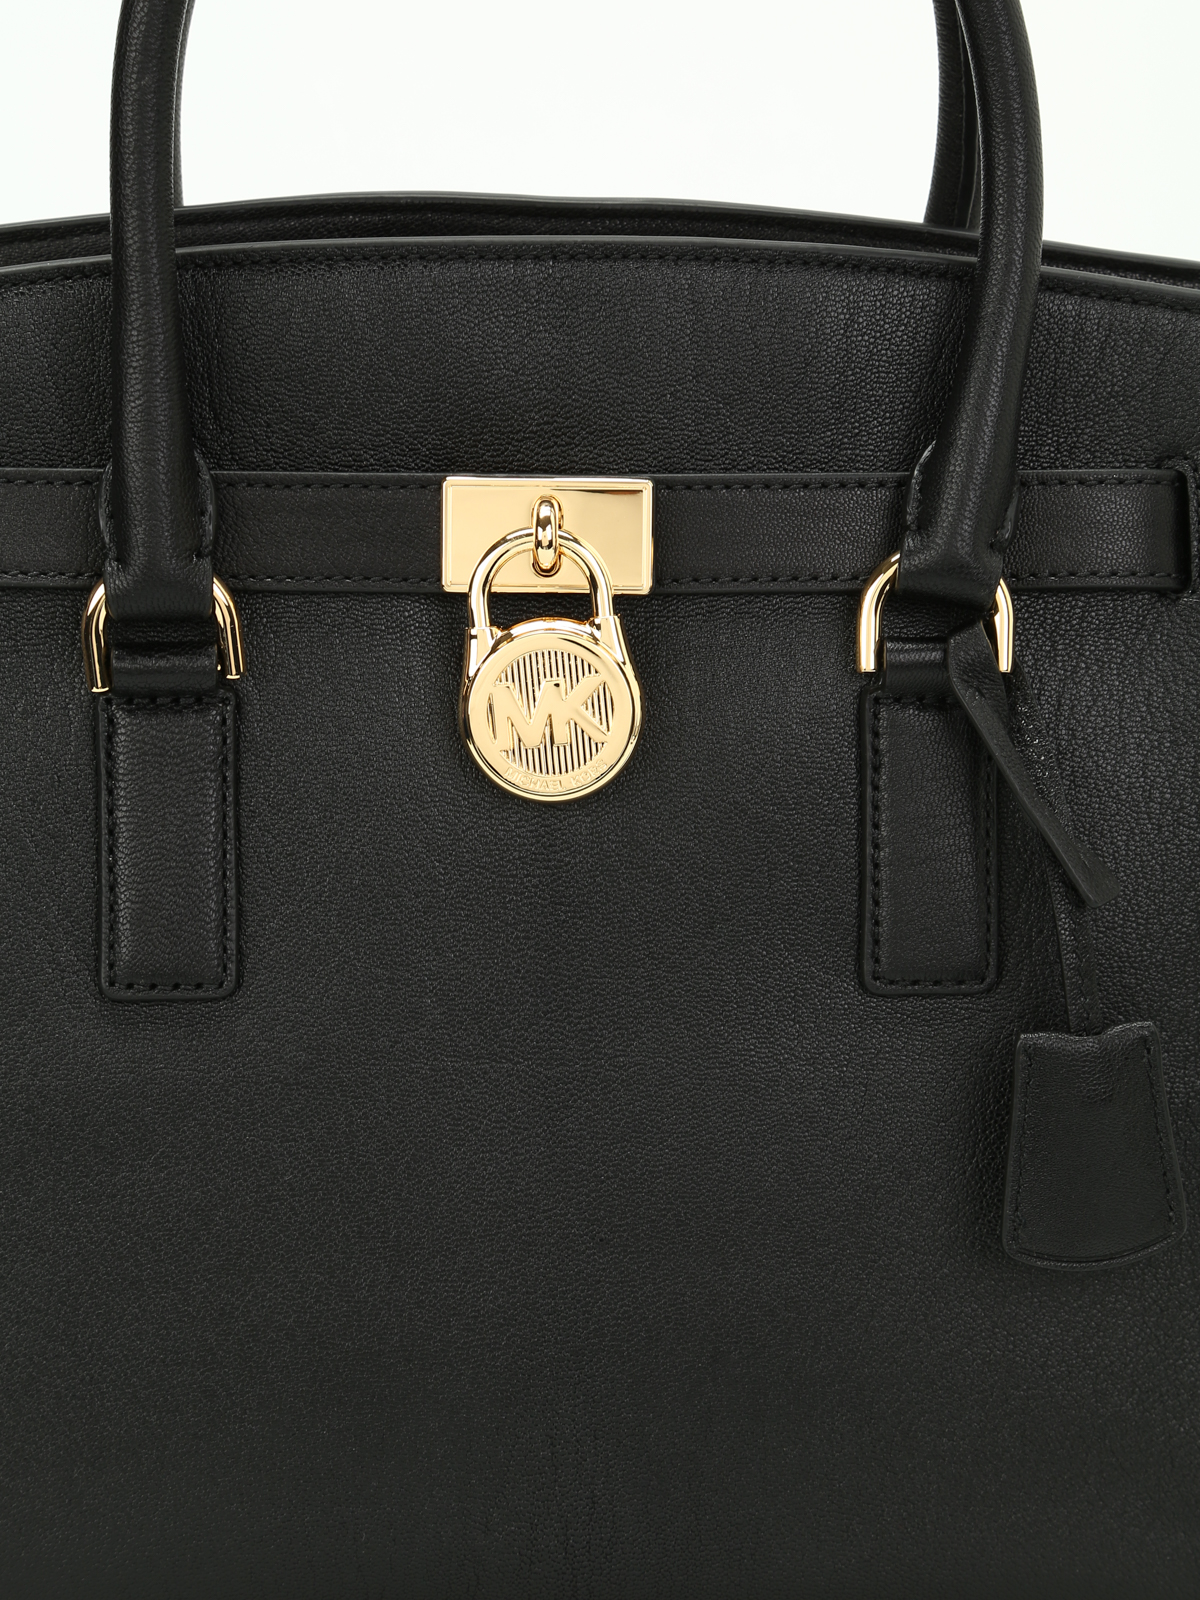 Shop Michael Kors Hamilton Handbag online